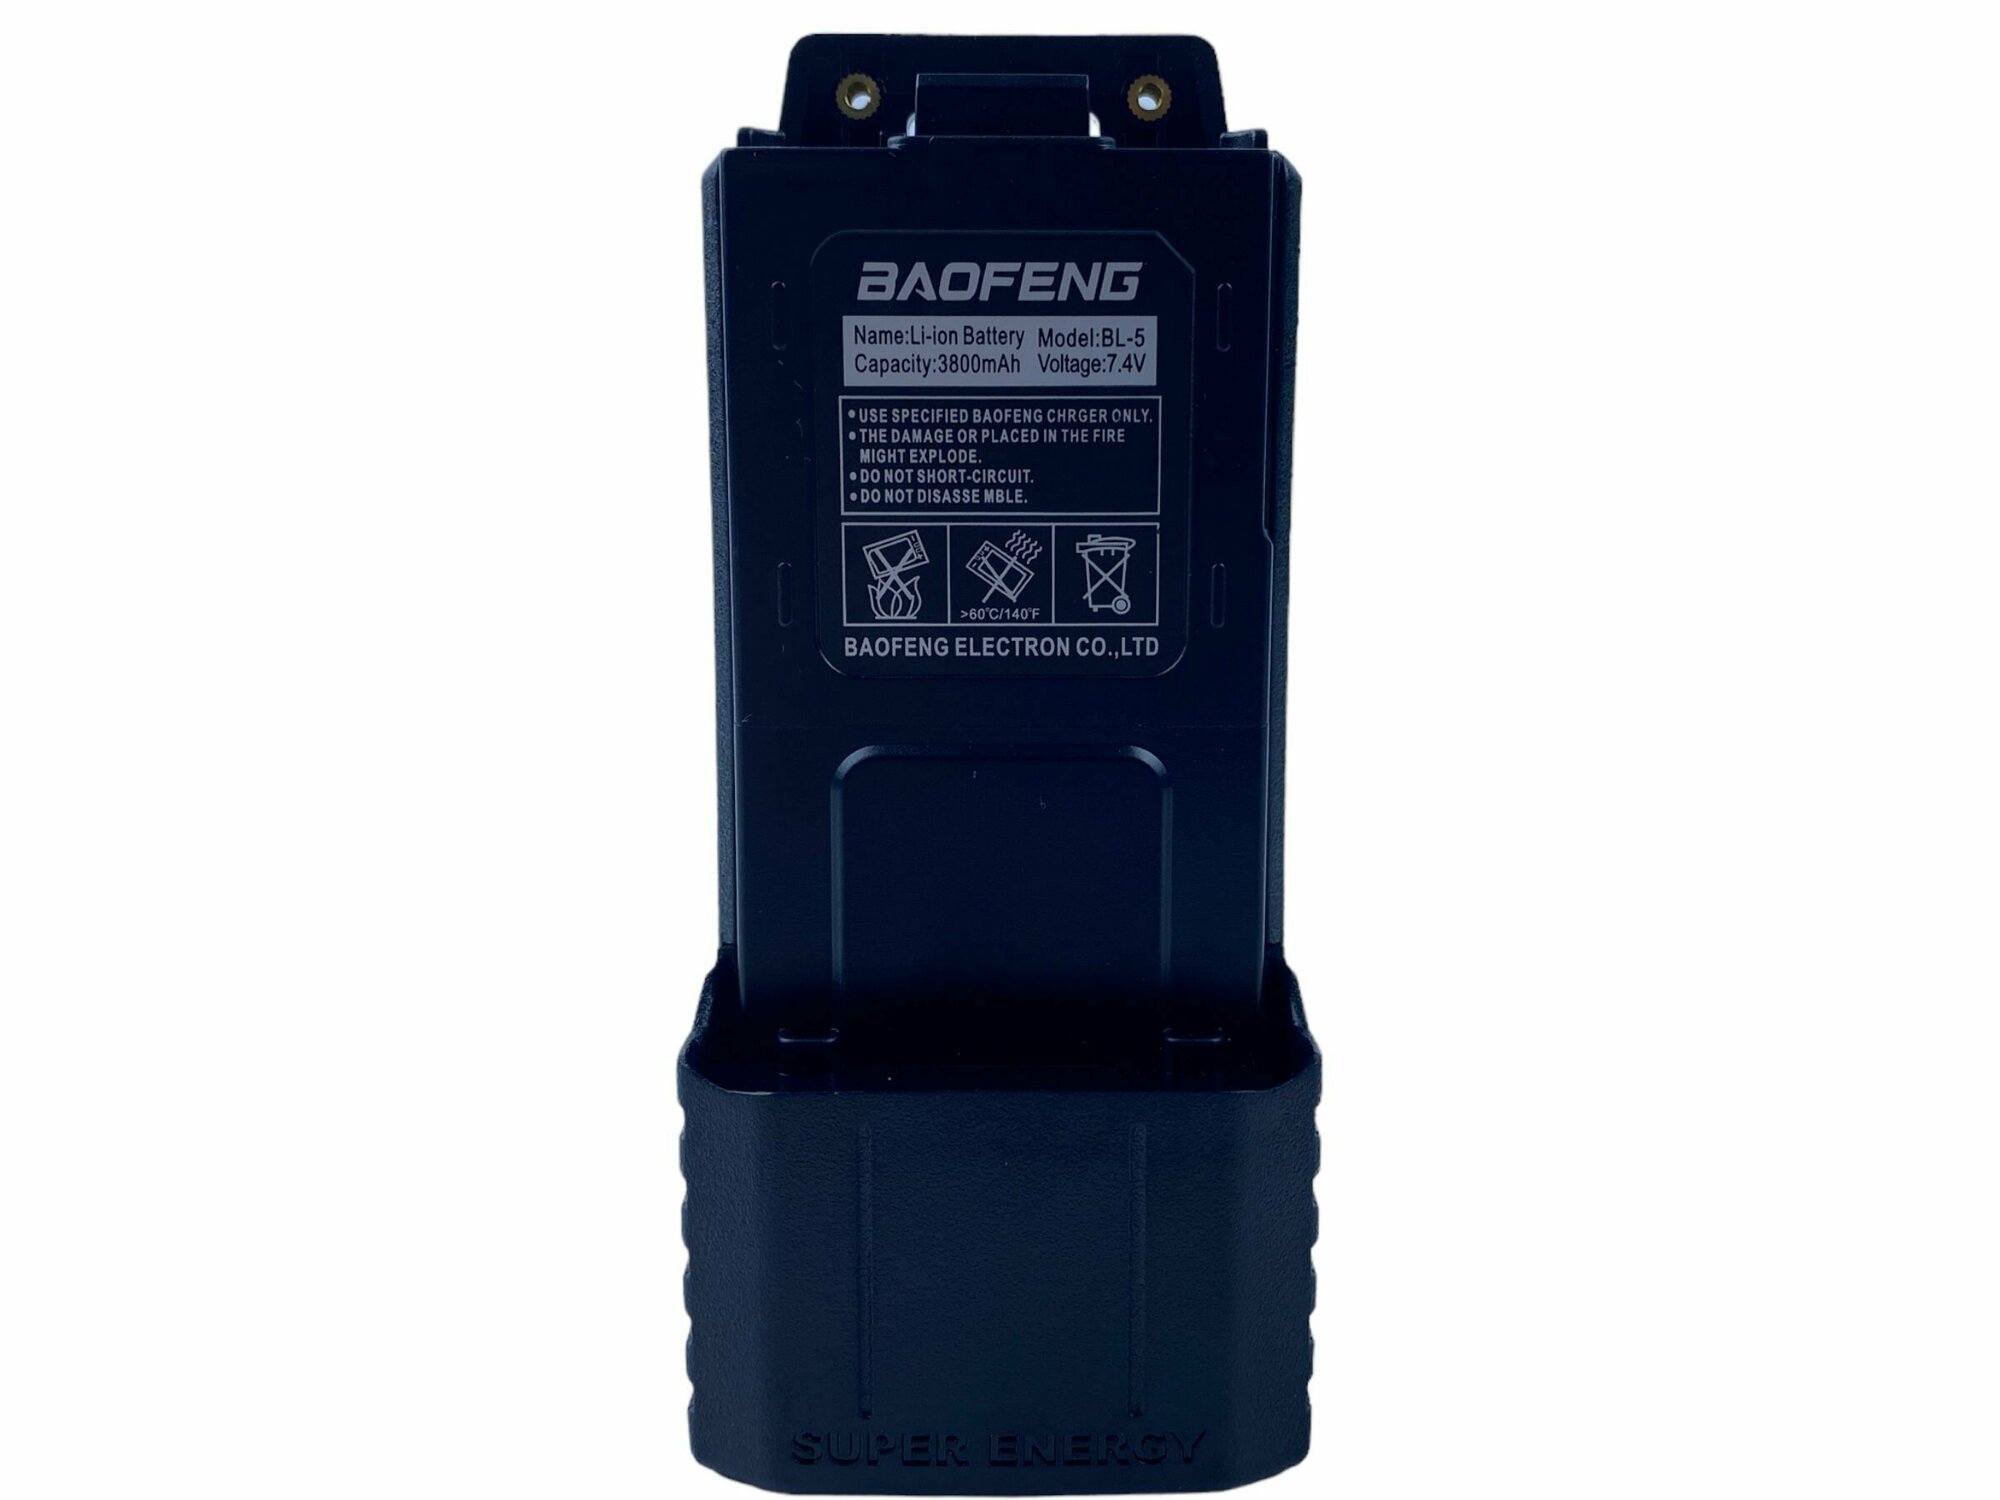 Аккумулятор для рации Baofeng UV-5R увеличенной ёмкости 3800 mAh с TYPE-C